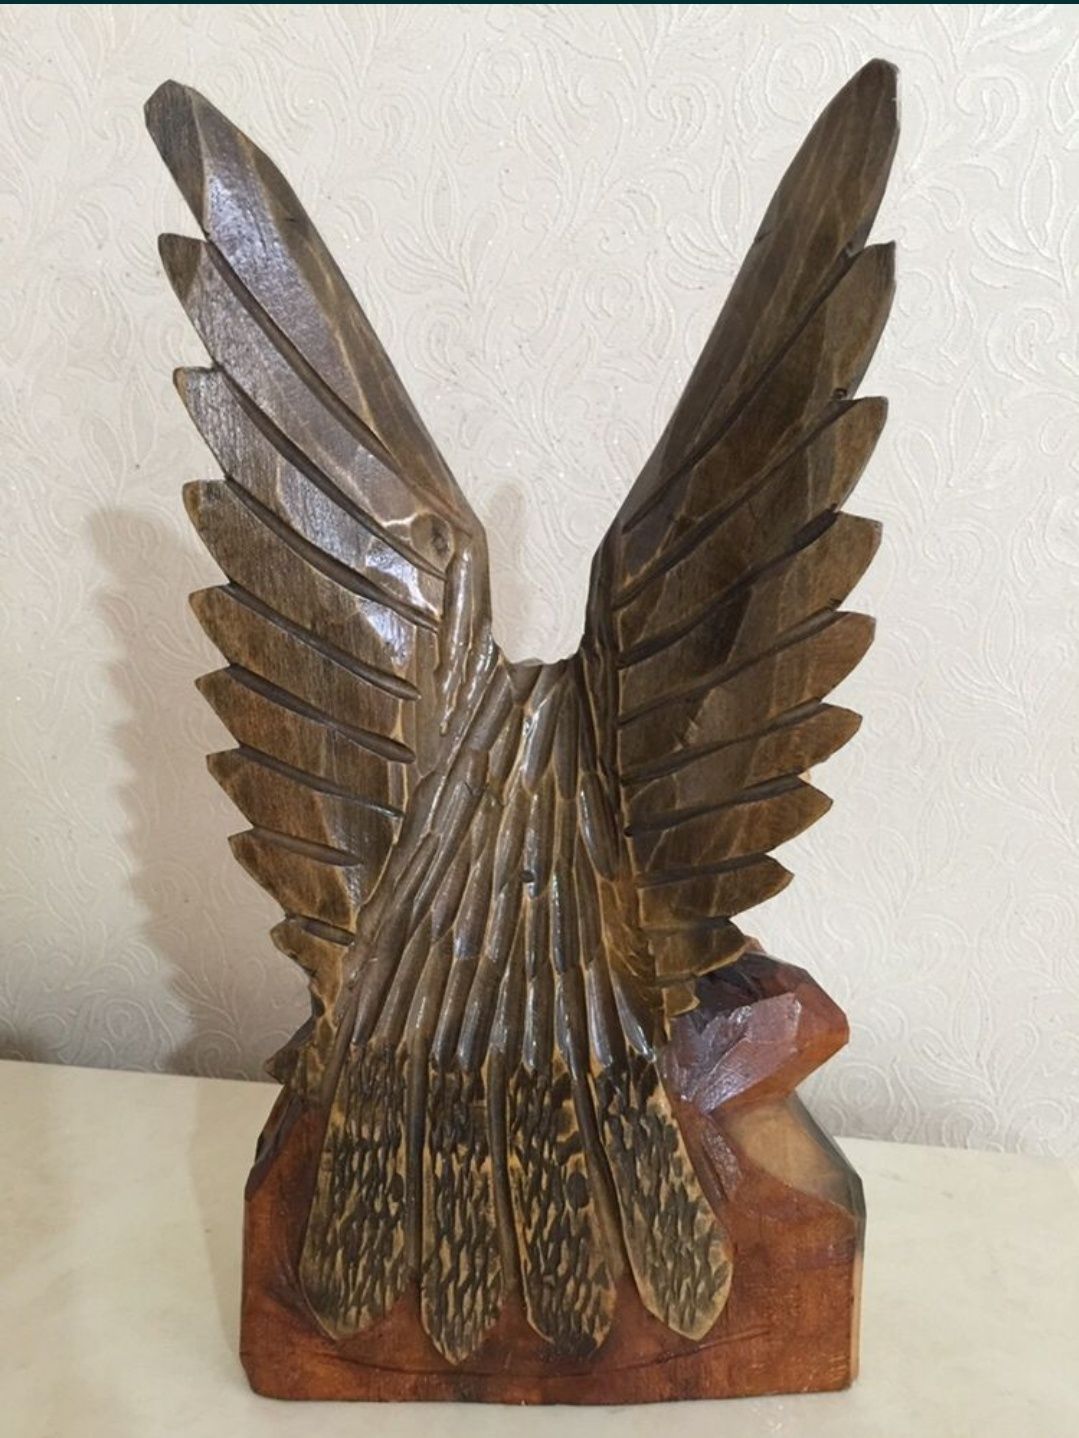 Орел деревянный, статуэтка из дерева,
ручная работа, СССР